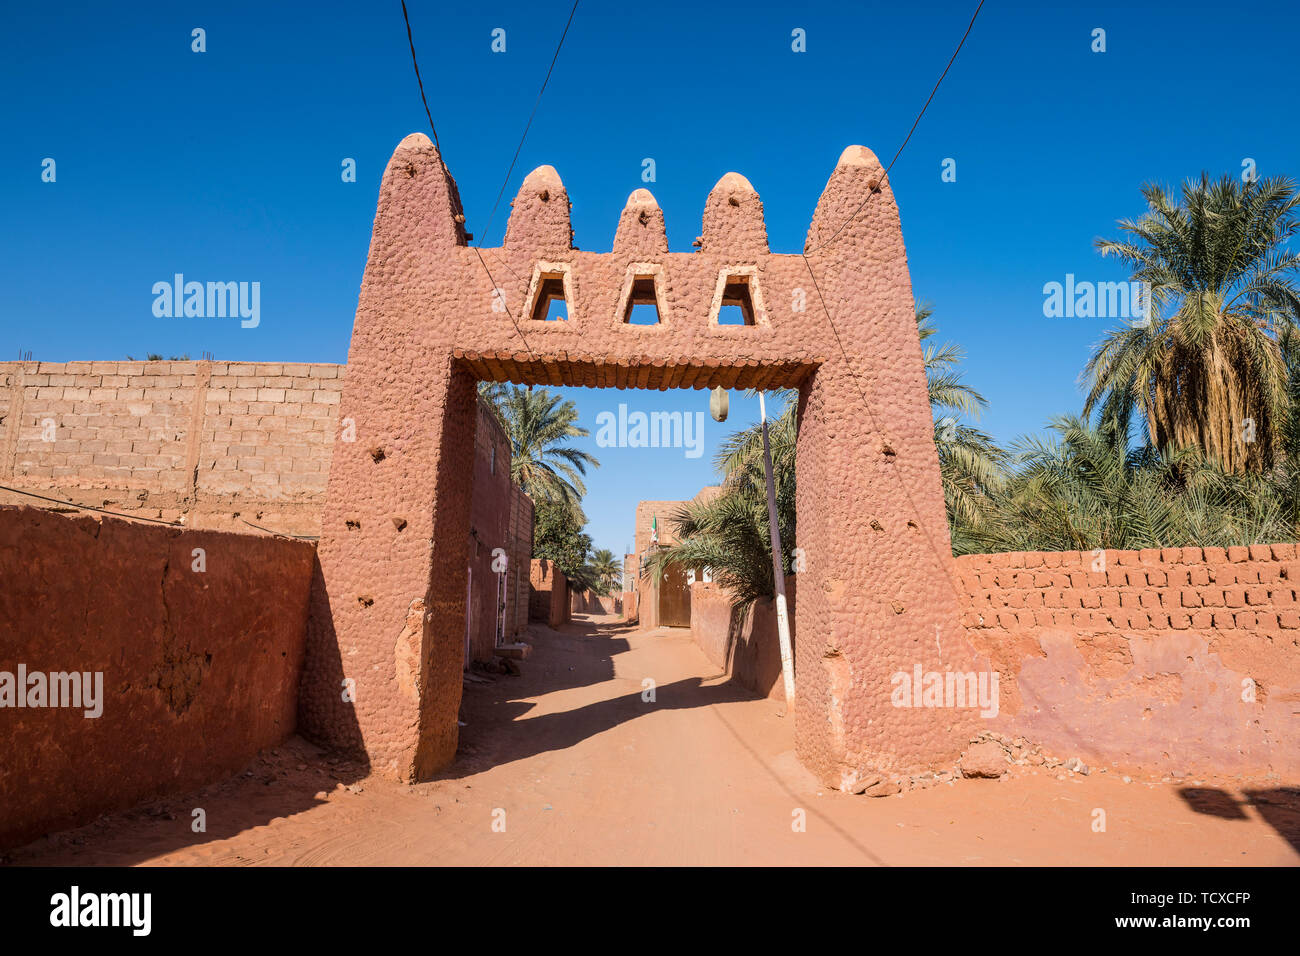 Porte de la ville Rouge dans la région de Timimoun, dans l'ouest de l'Algérie, l'Afrique du Nord, Afrique Banque D'Images